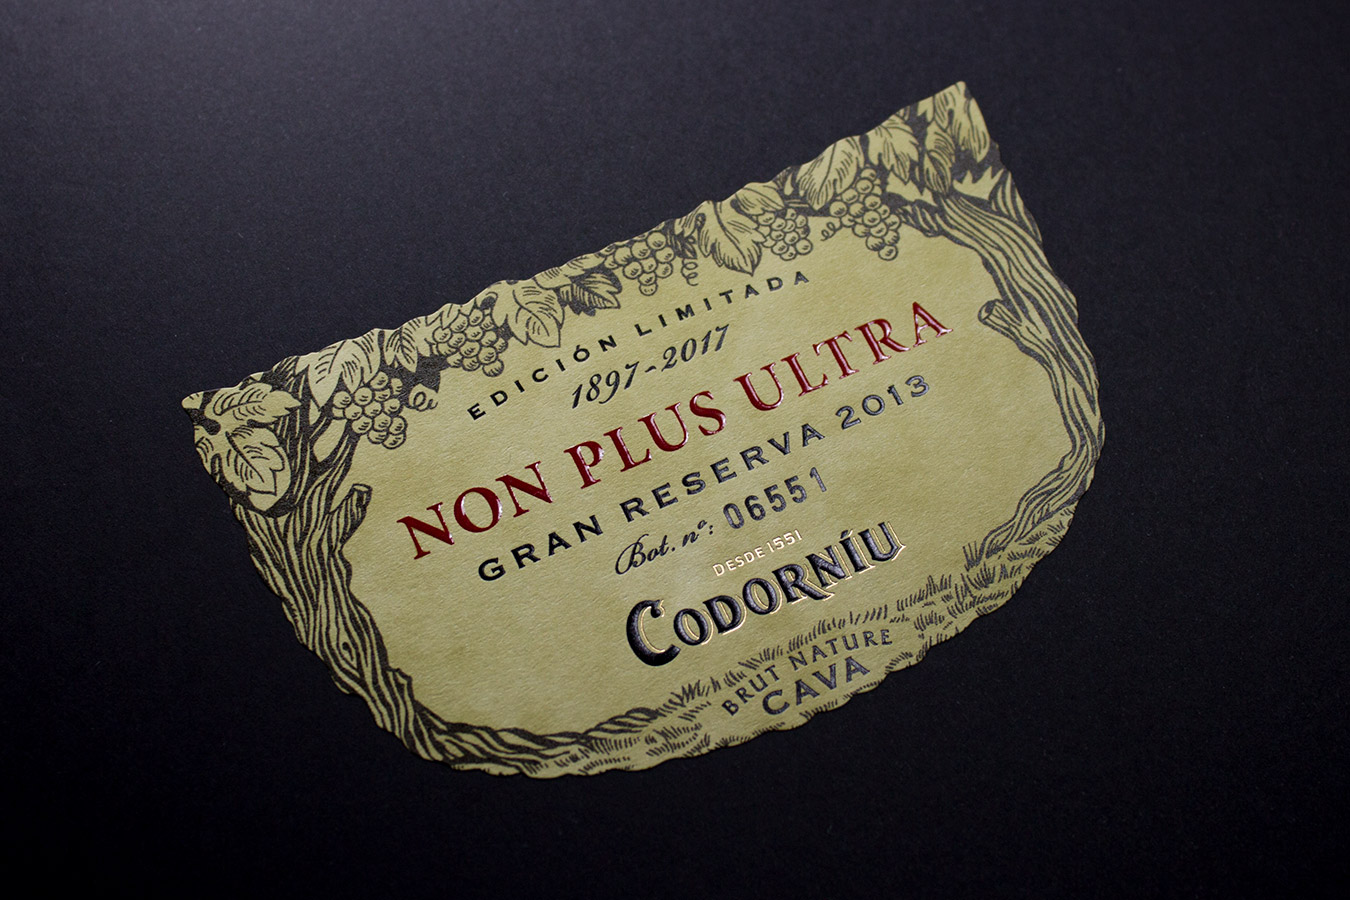 Non Plus Ultra Codorníu - Eva Arias Graphic Studio